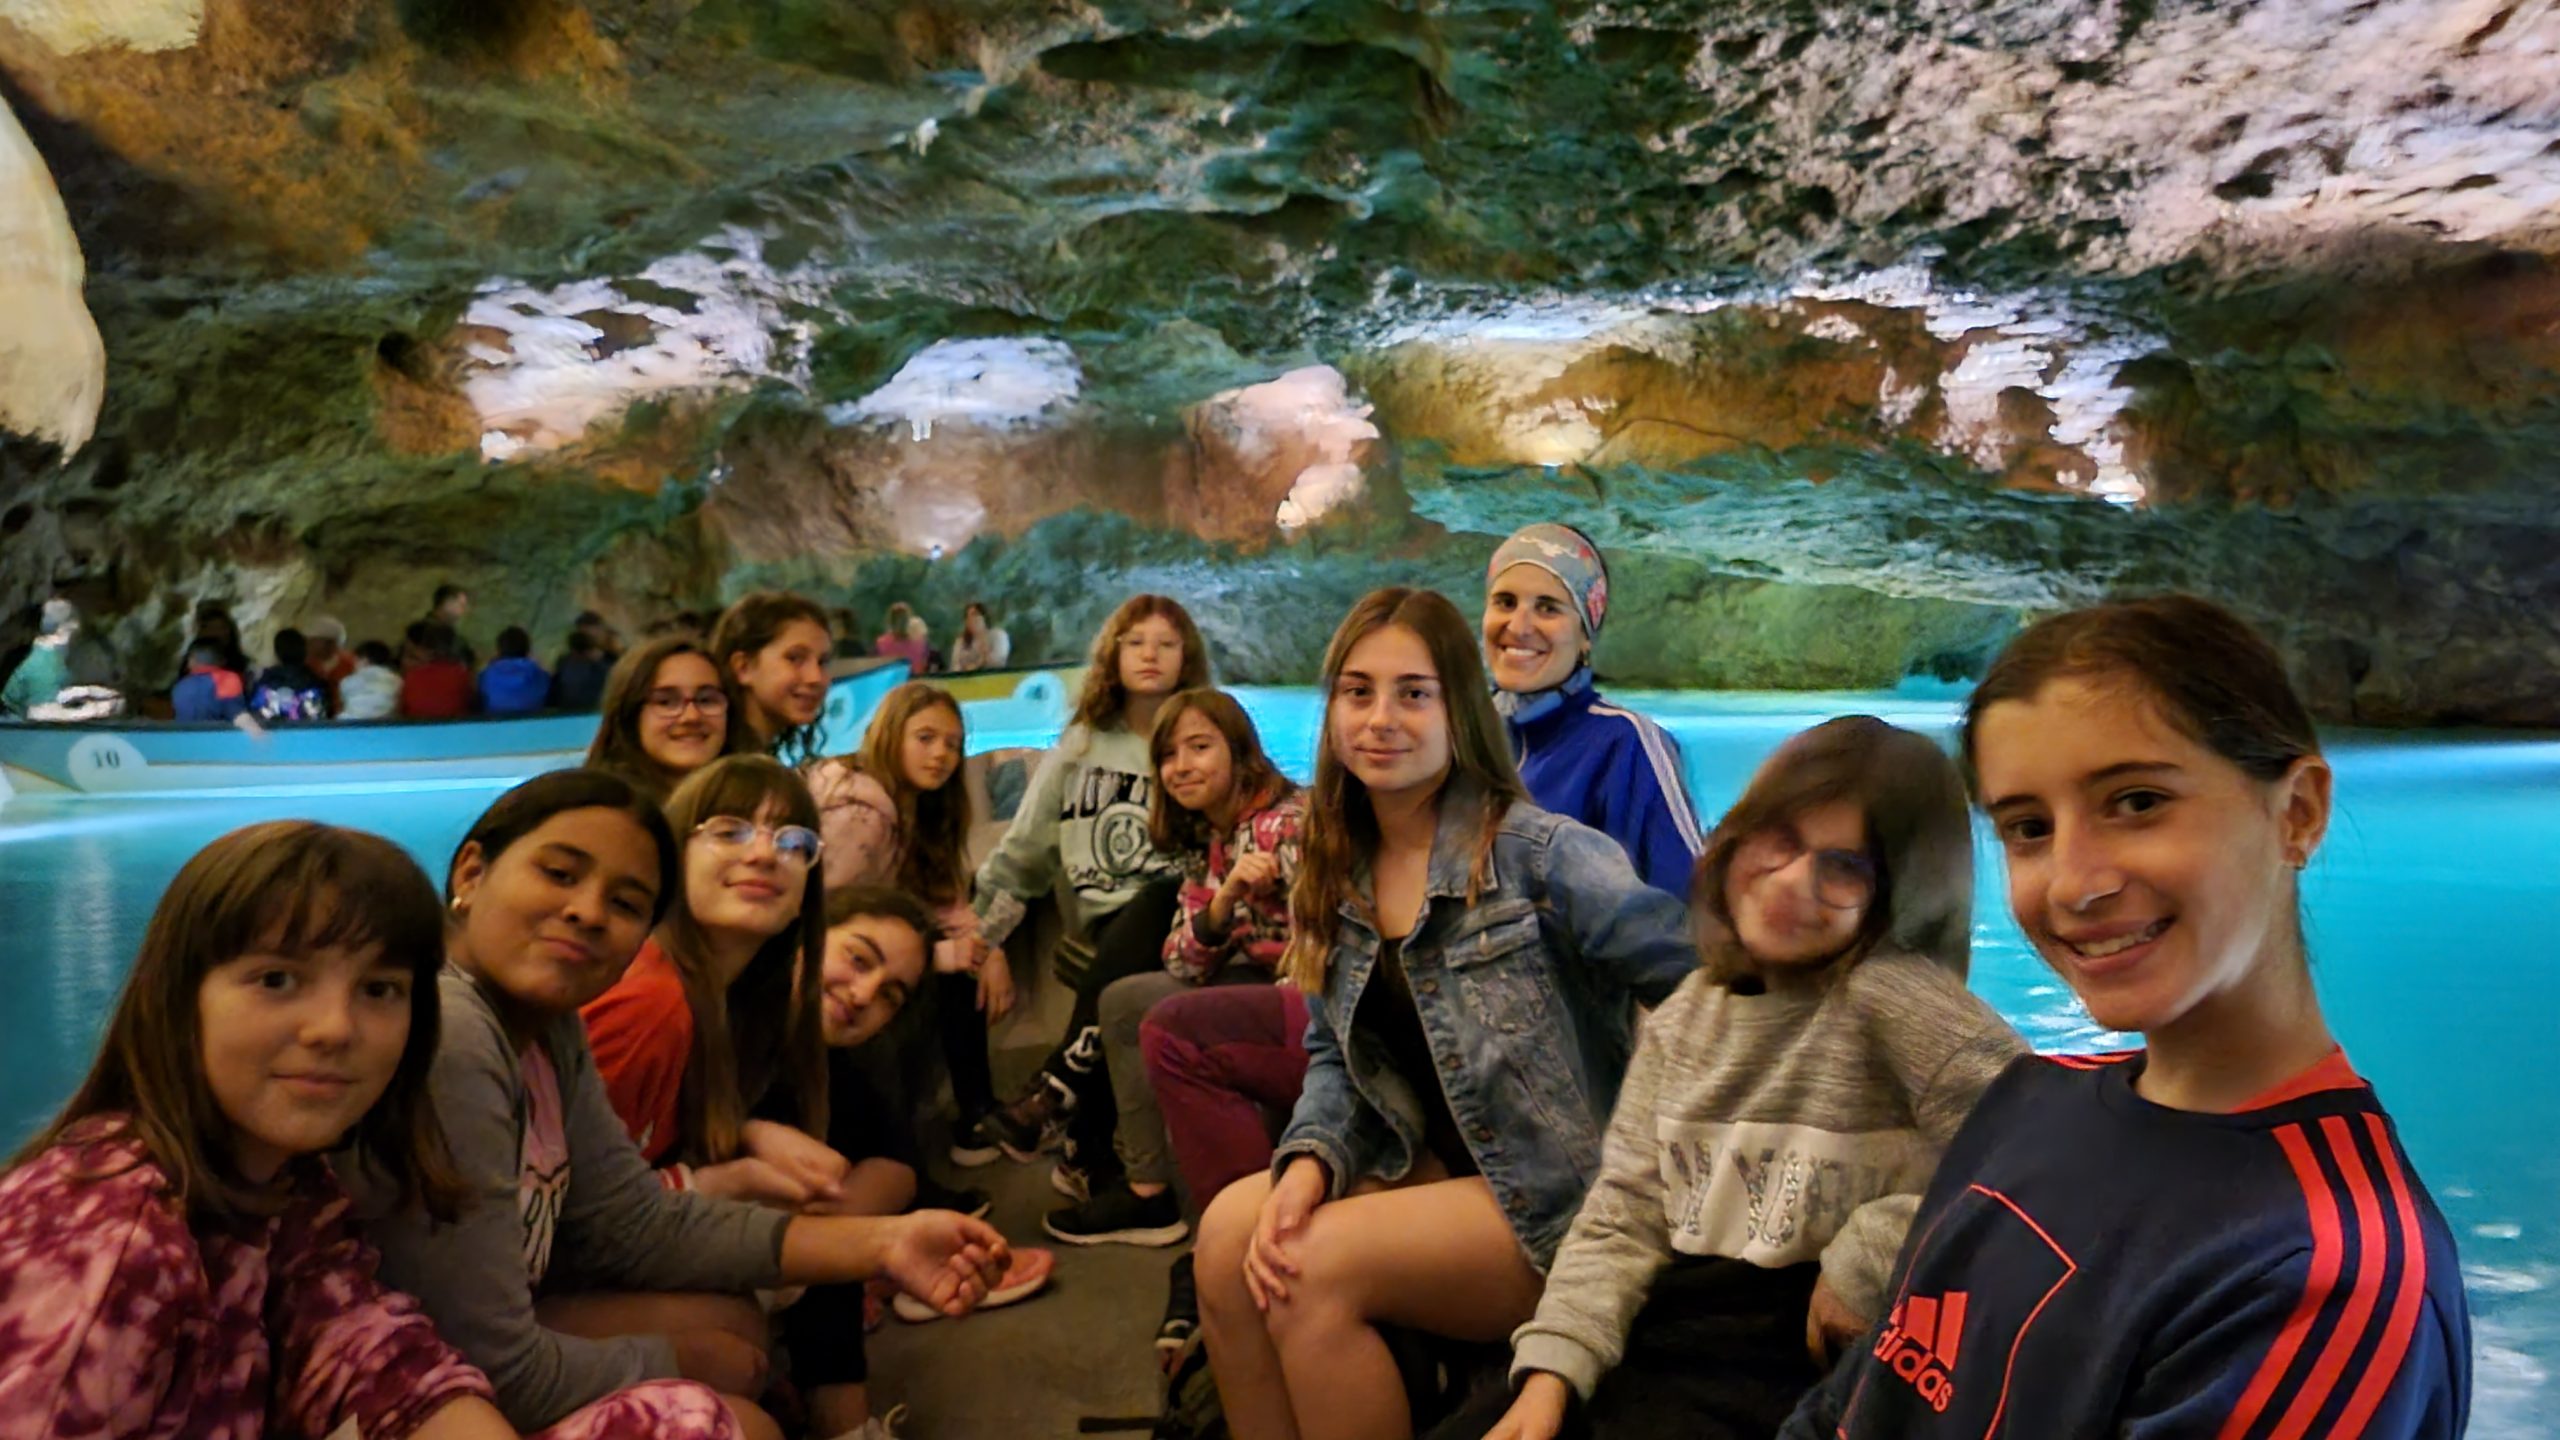 Vistita a las cuevas de Vall d'Uxo